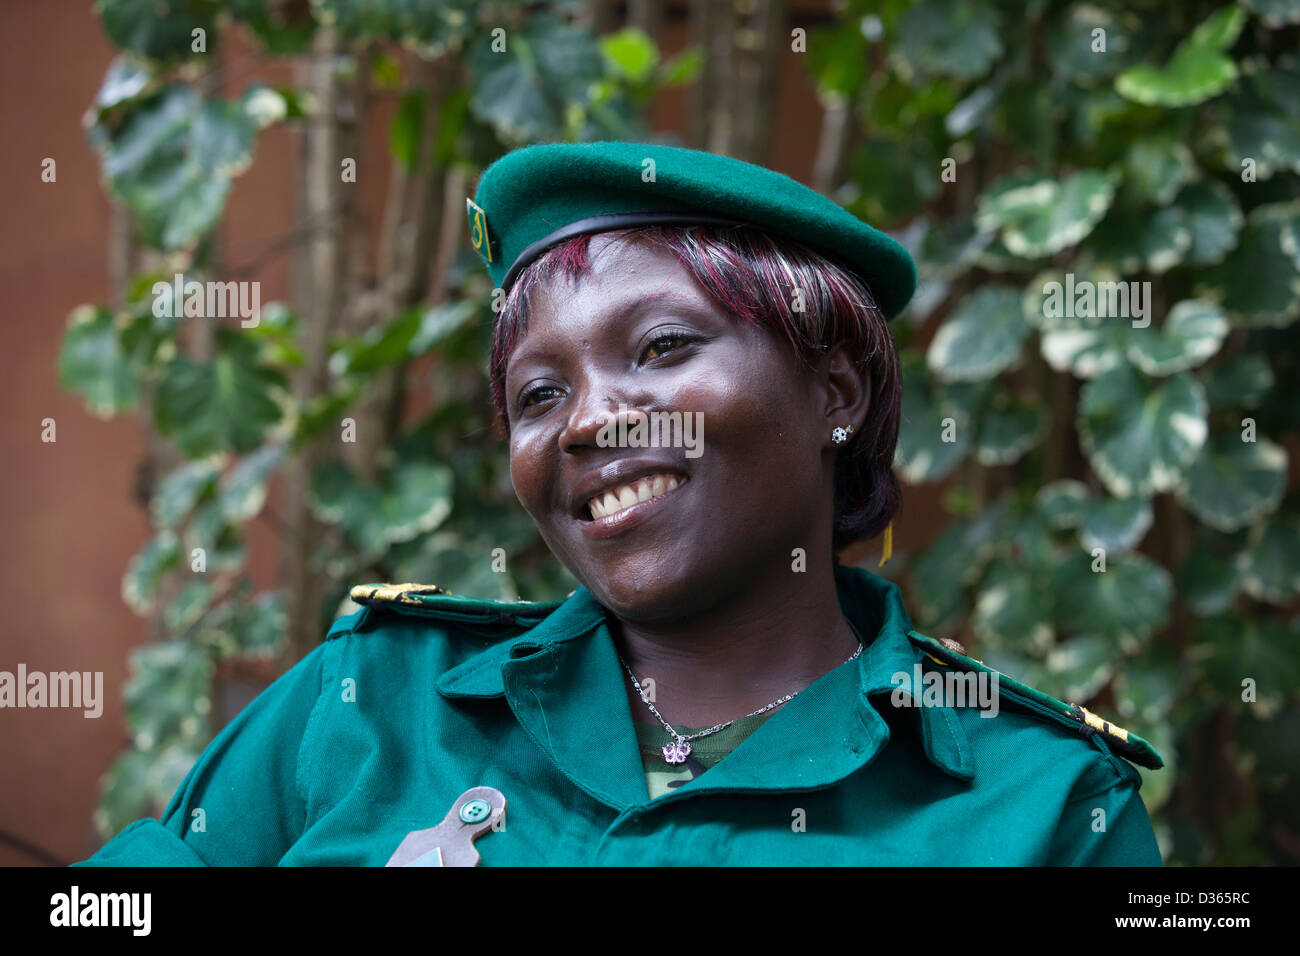 Kamerun, 3. Oktober 2012: Maria, eine Öko-Wache wurde von Wilderern angegriffen und schwer verwundet, weil sie unbewaffnet war.  Sie hat nun nach mehreren Monaten im Krankenhaus erholt und ist wieder bei der Arbeit. Stockfoto